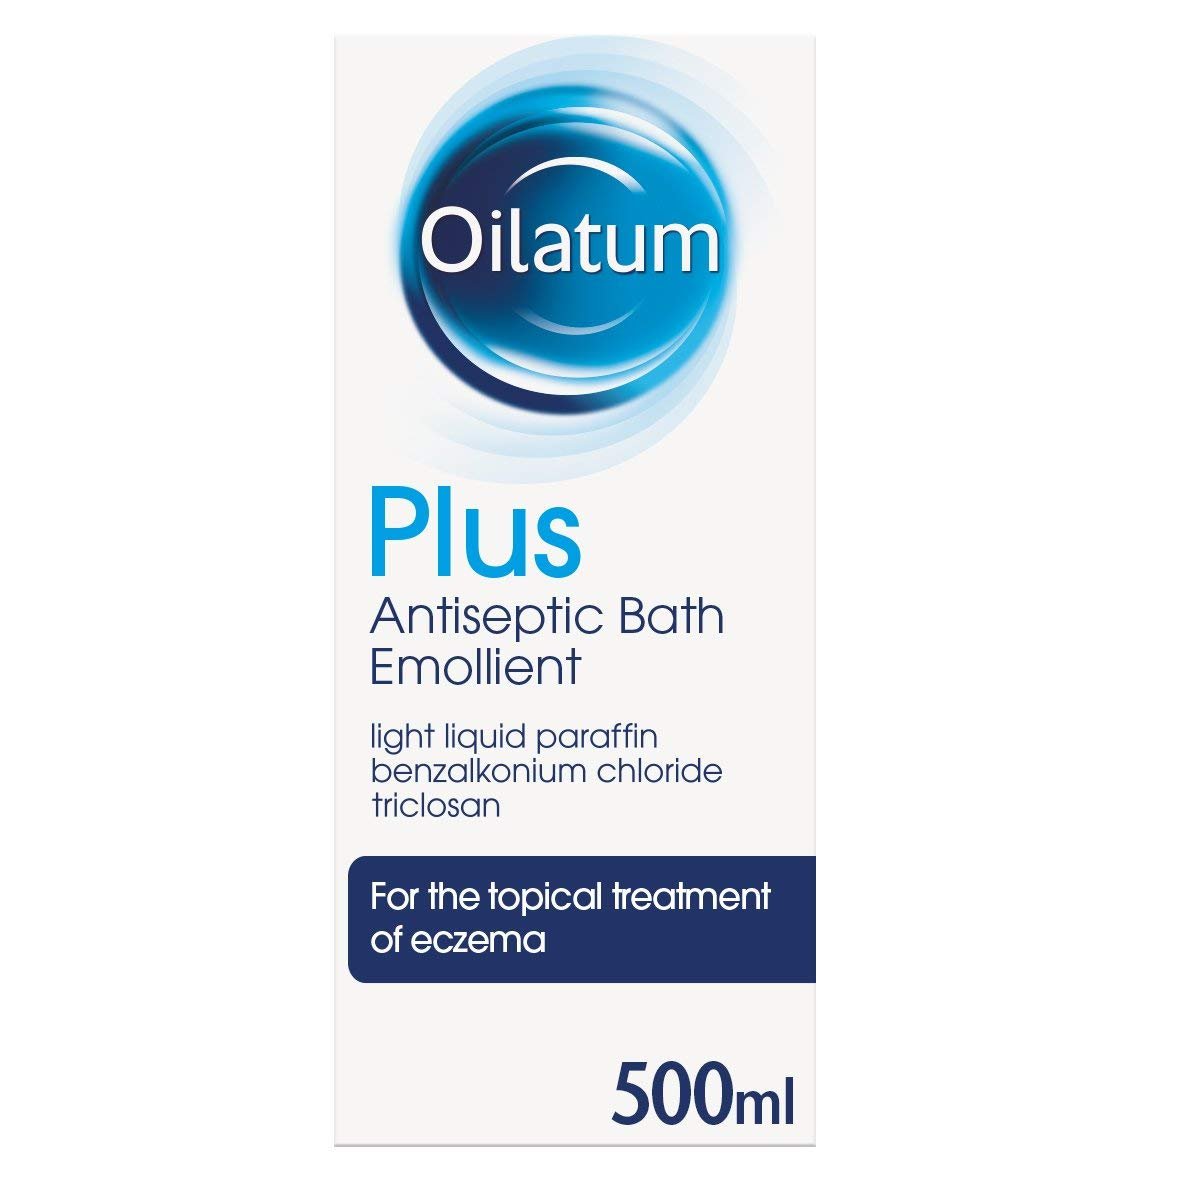 Oilatum Plus Antiseptic Bath – 500ml